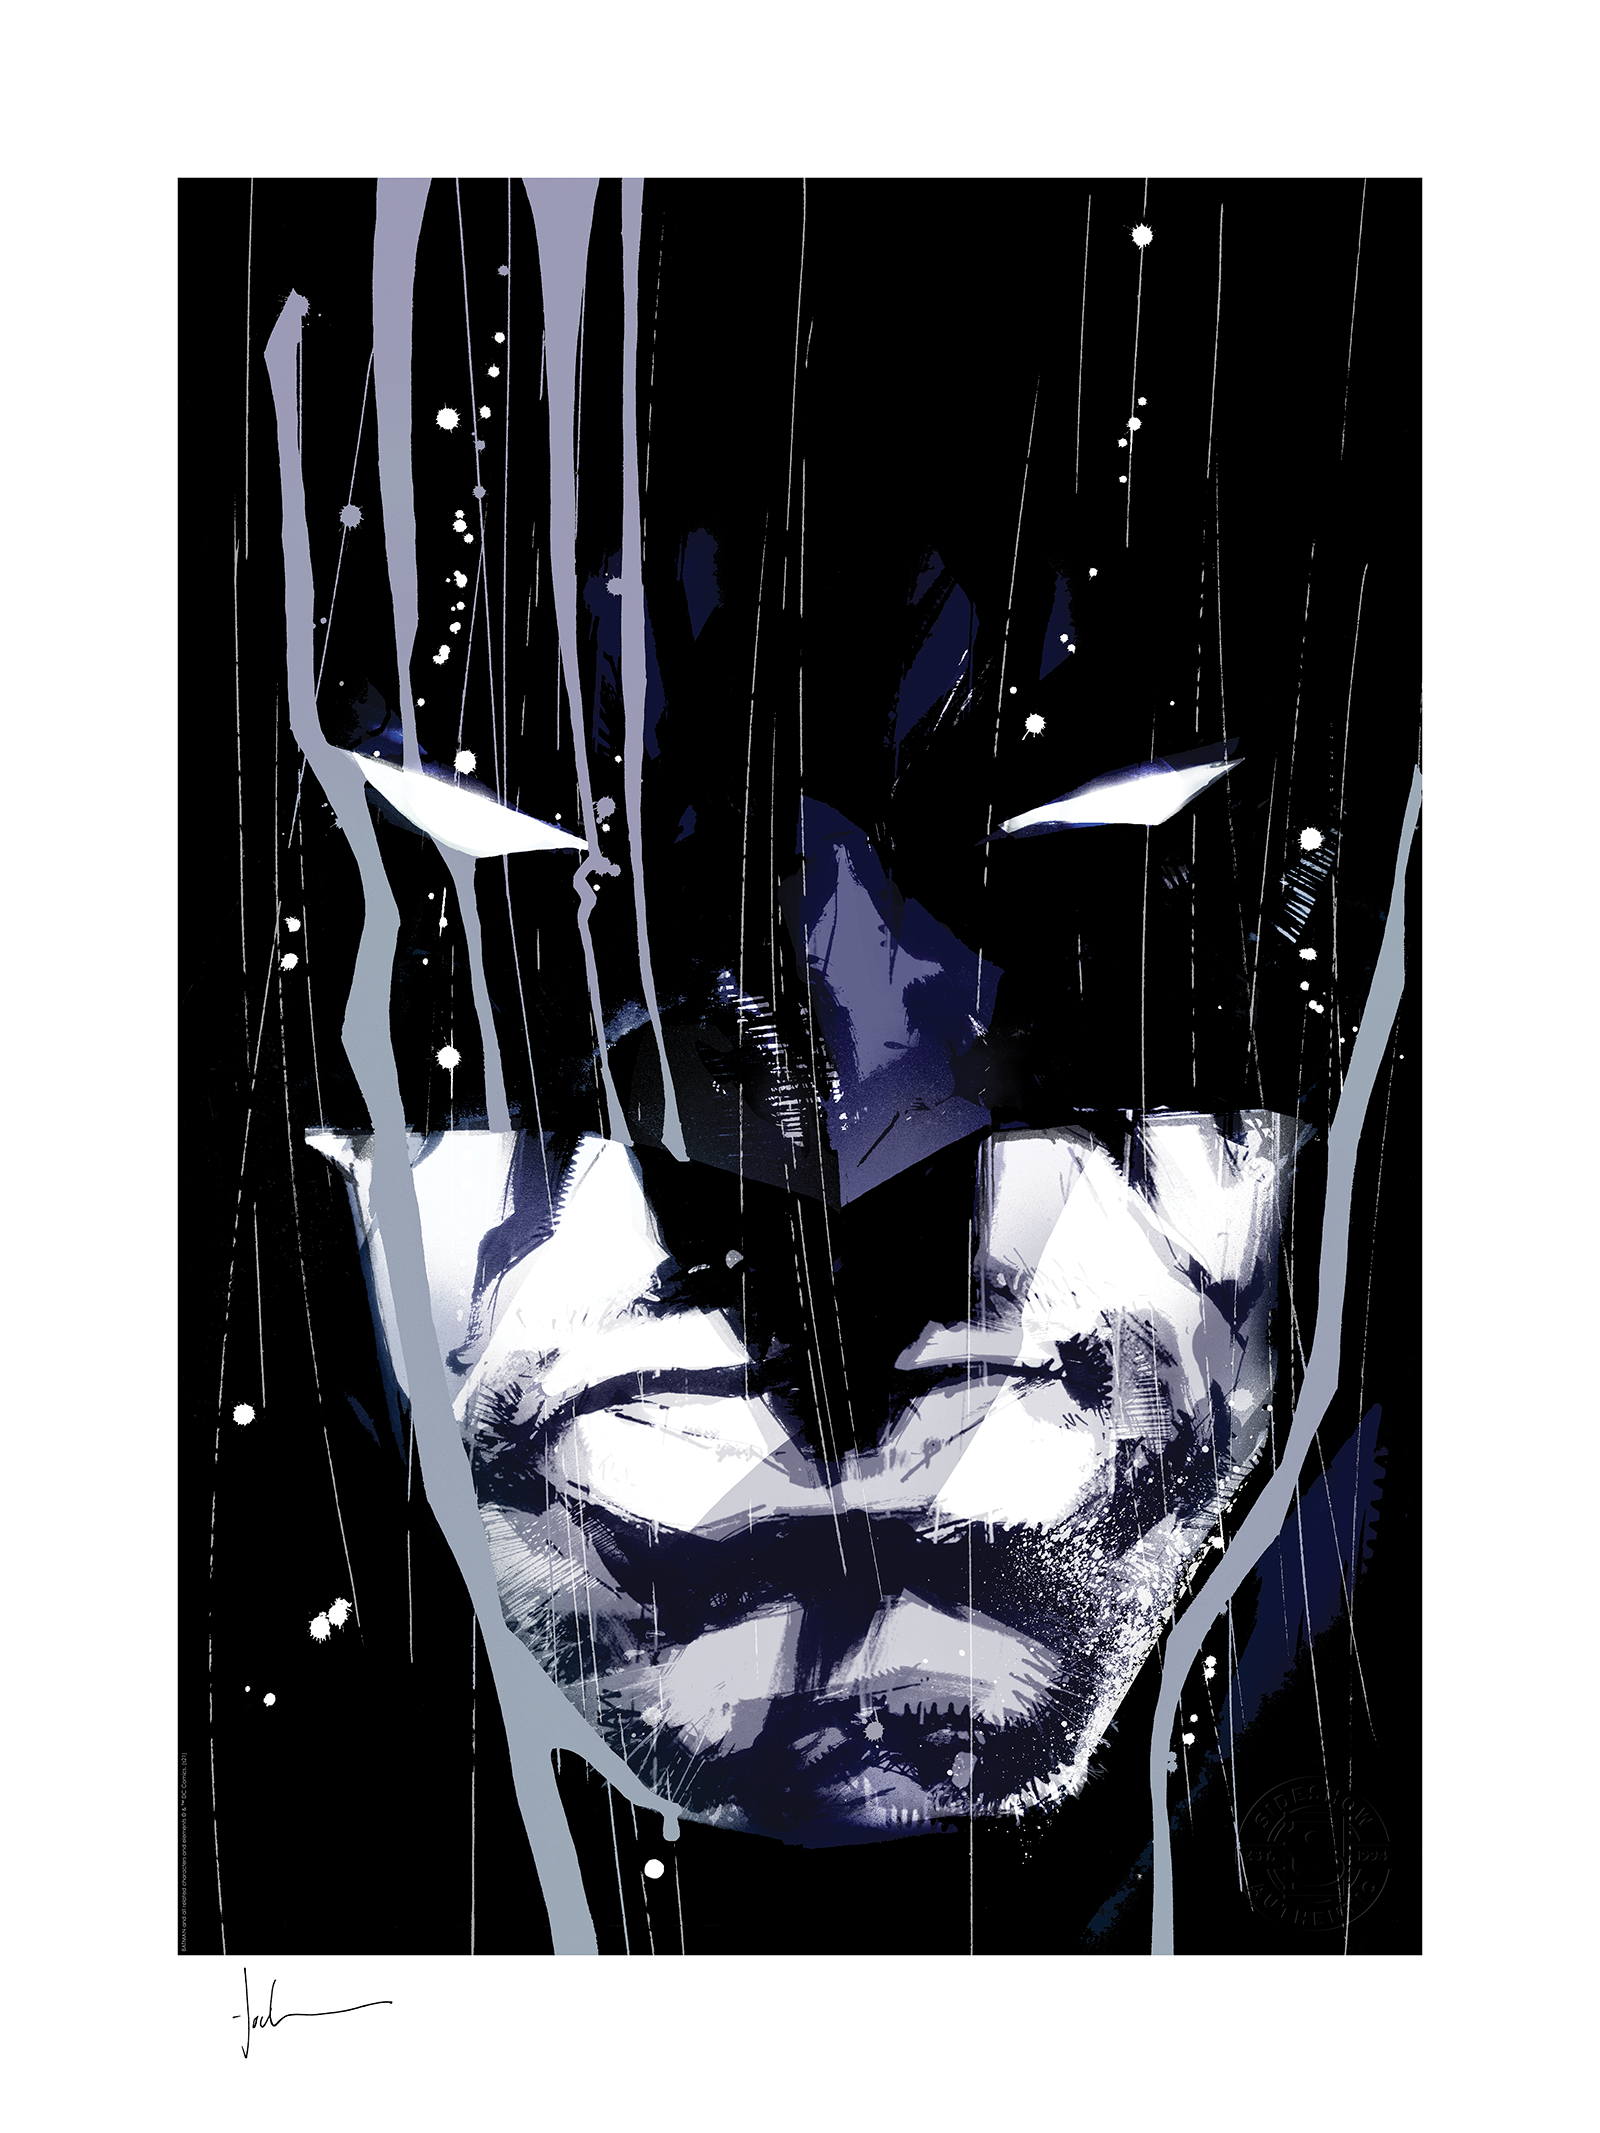 Batman: Detective Comics #1000 Exclusive Edition 